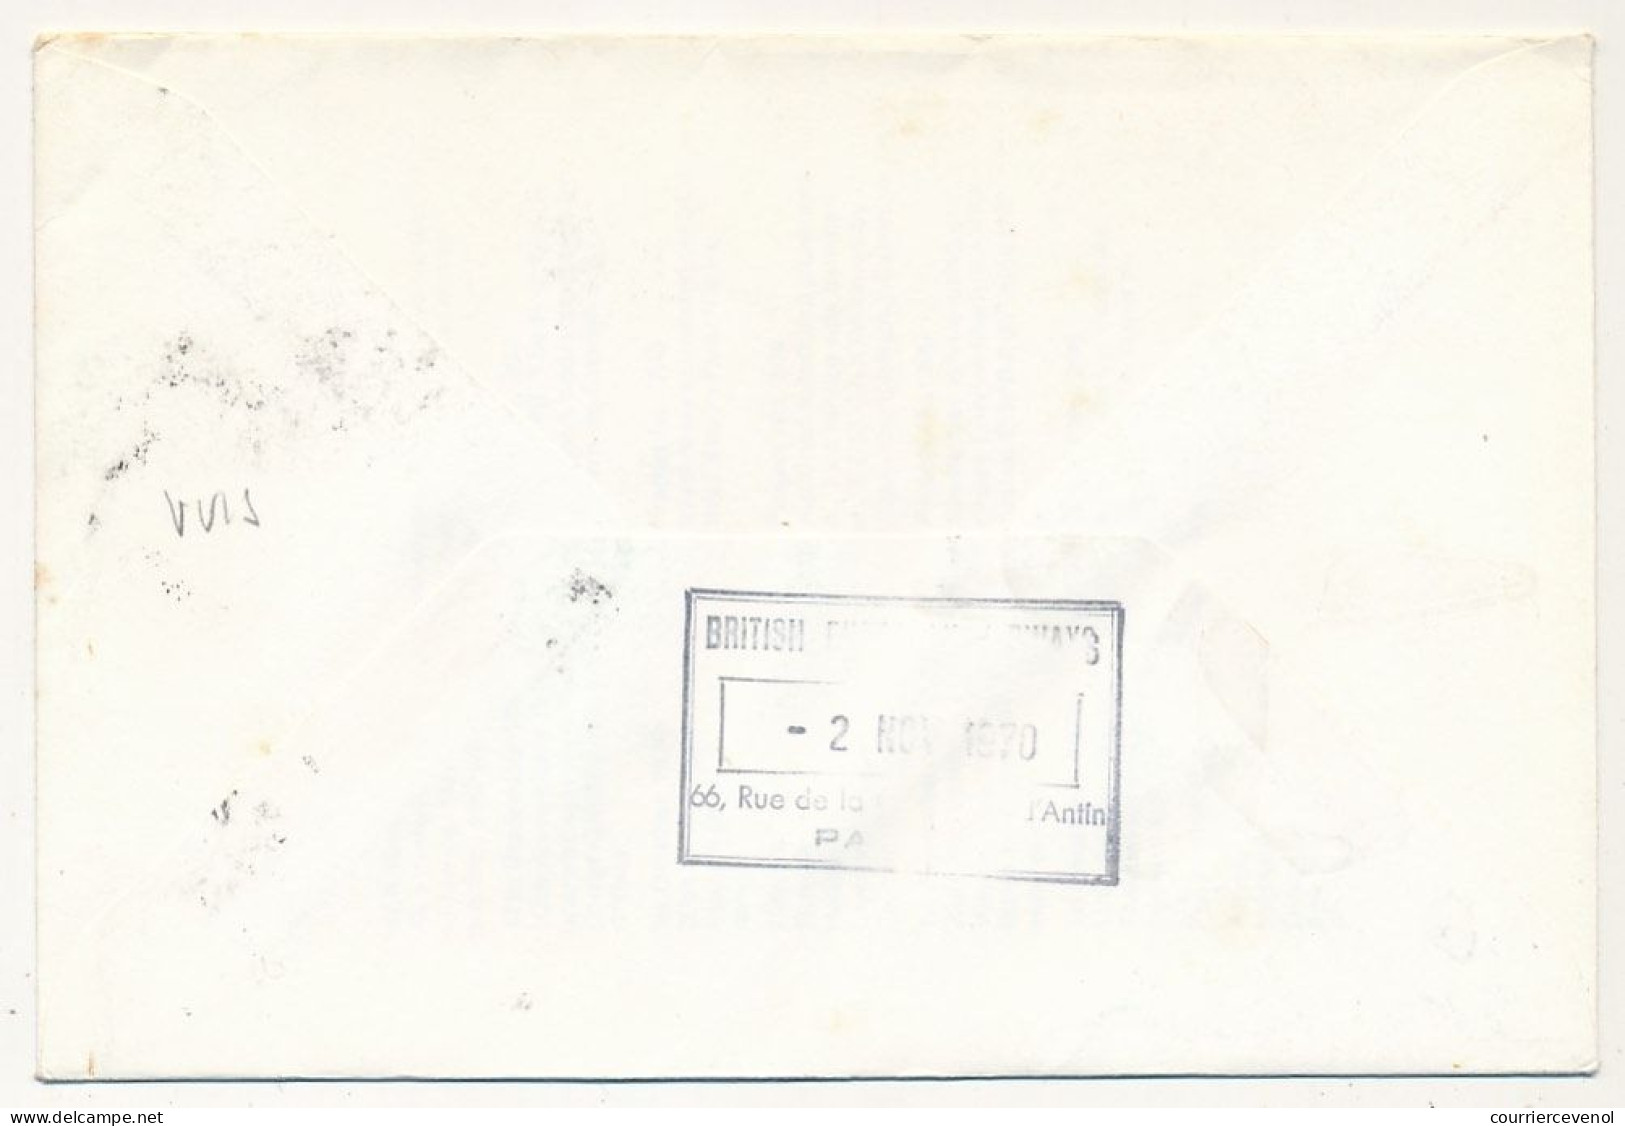 GRANDE BRETAGNE - Env. BEA - 20eme Anniversaire Viscount Aircraft 1er Nov 1970 - Briefe U. Dokumente